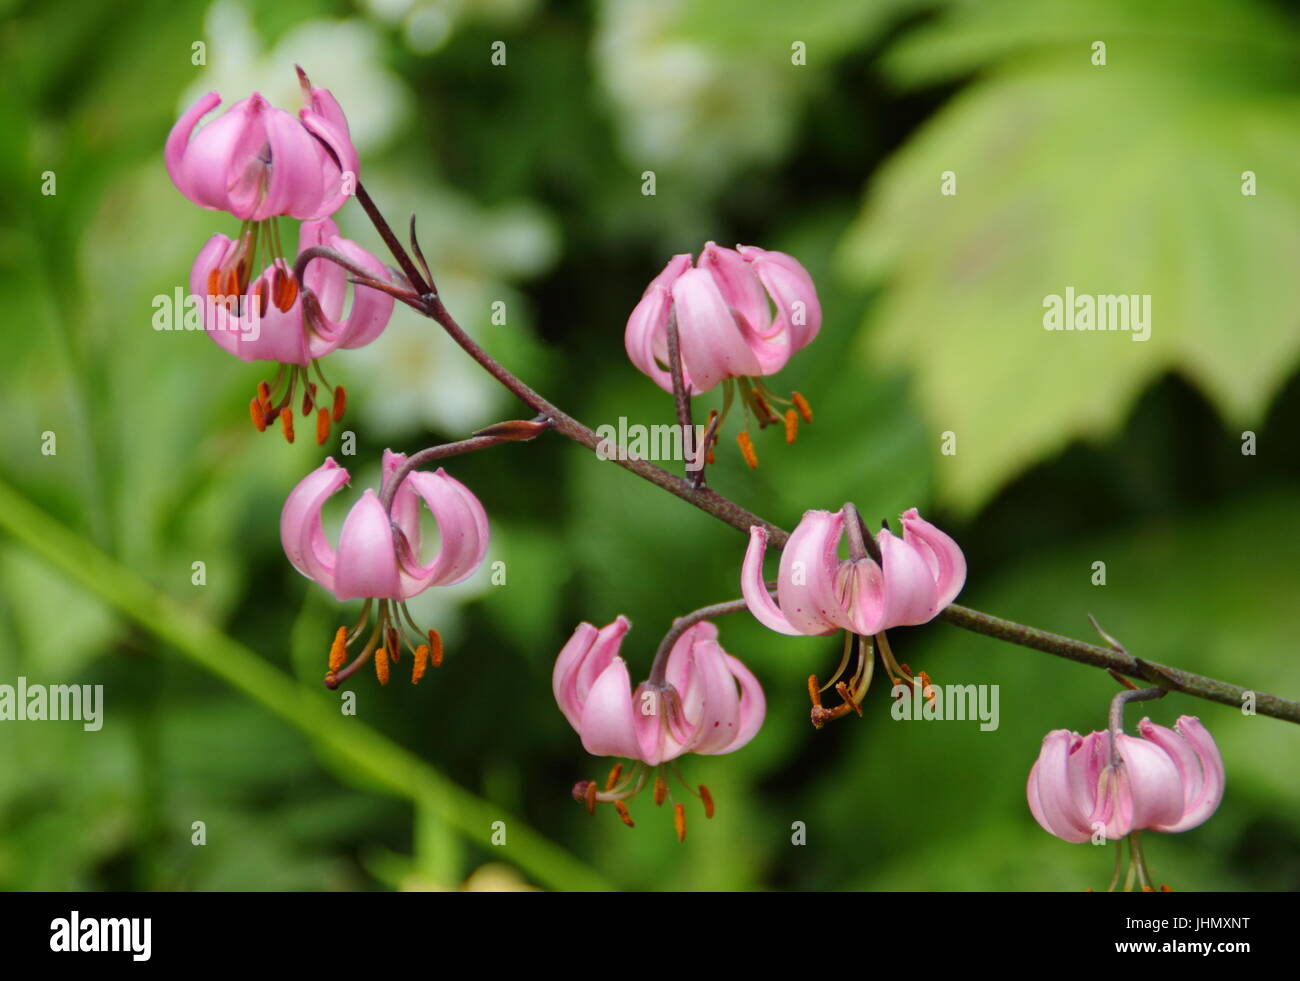 El Lilium martagon - Turk's Cap Lily - en plena floración en un jardín inglés en verano Foto de stock